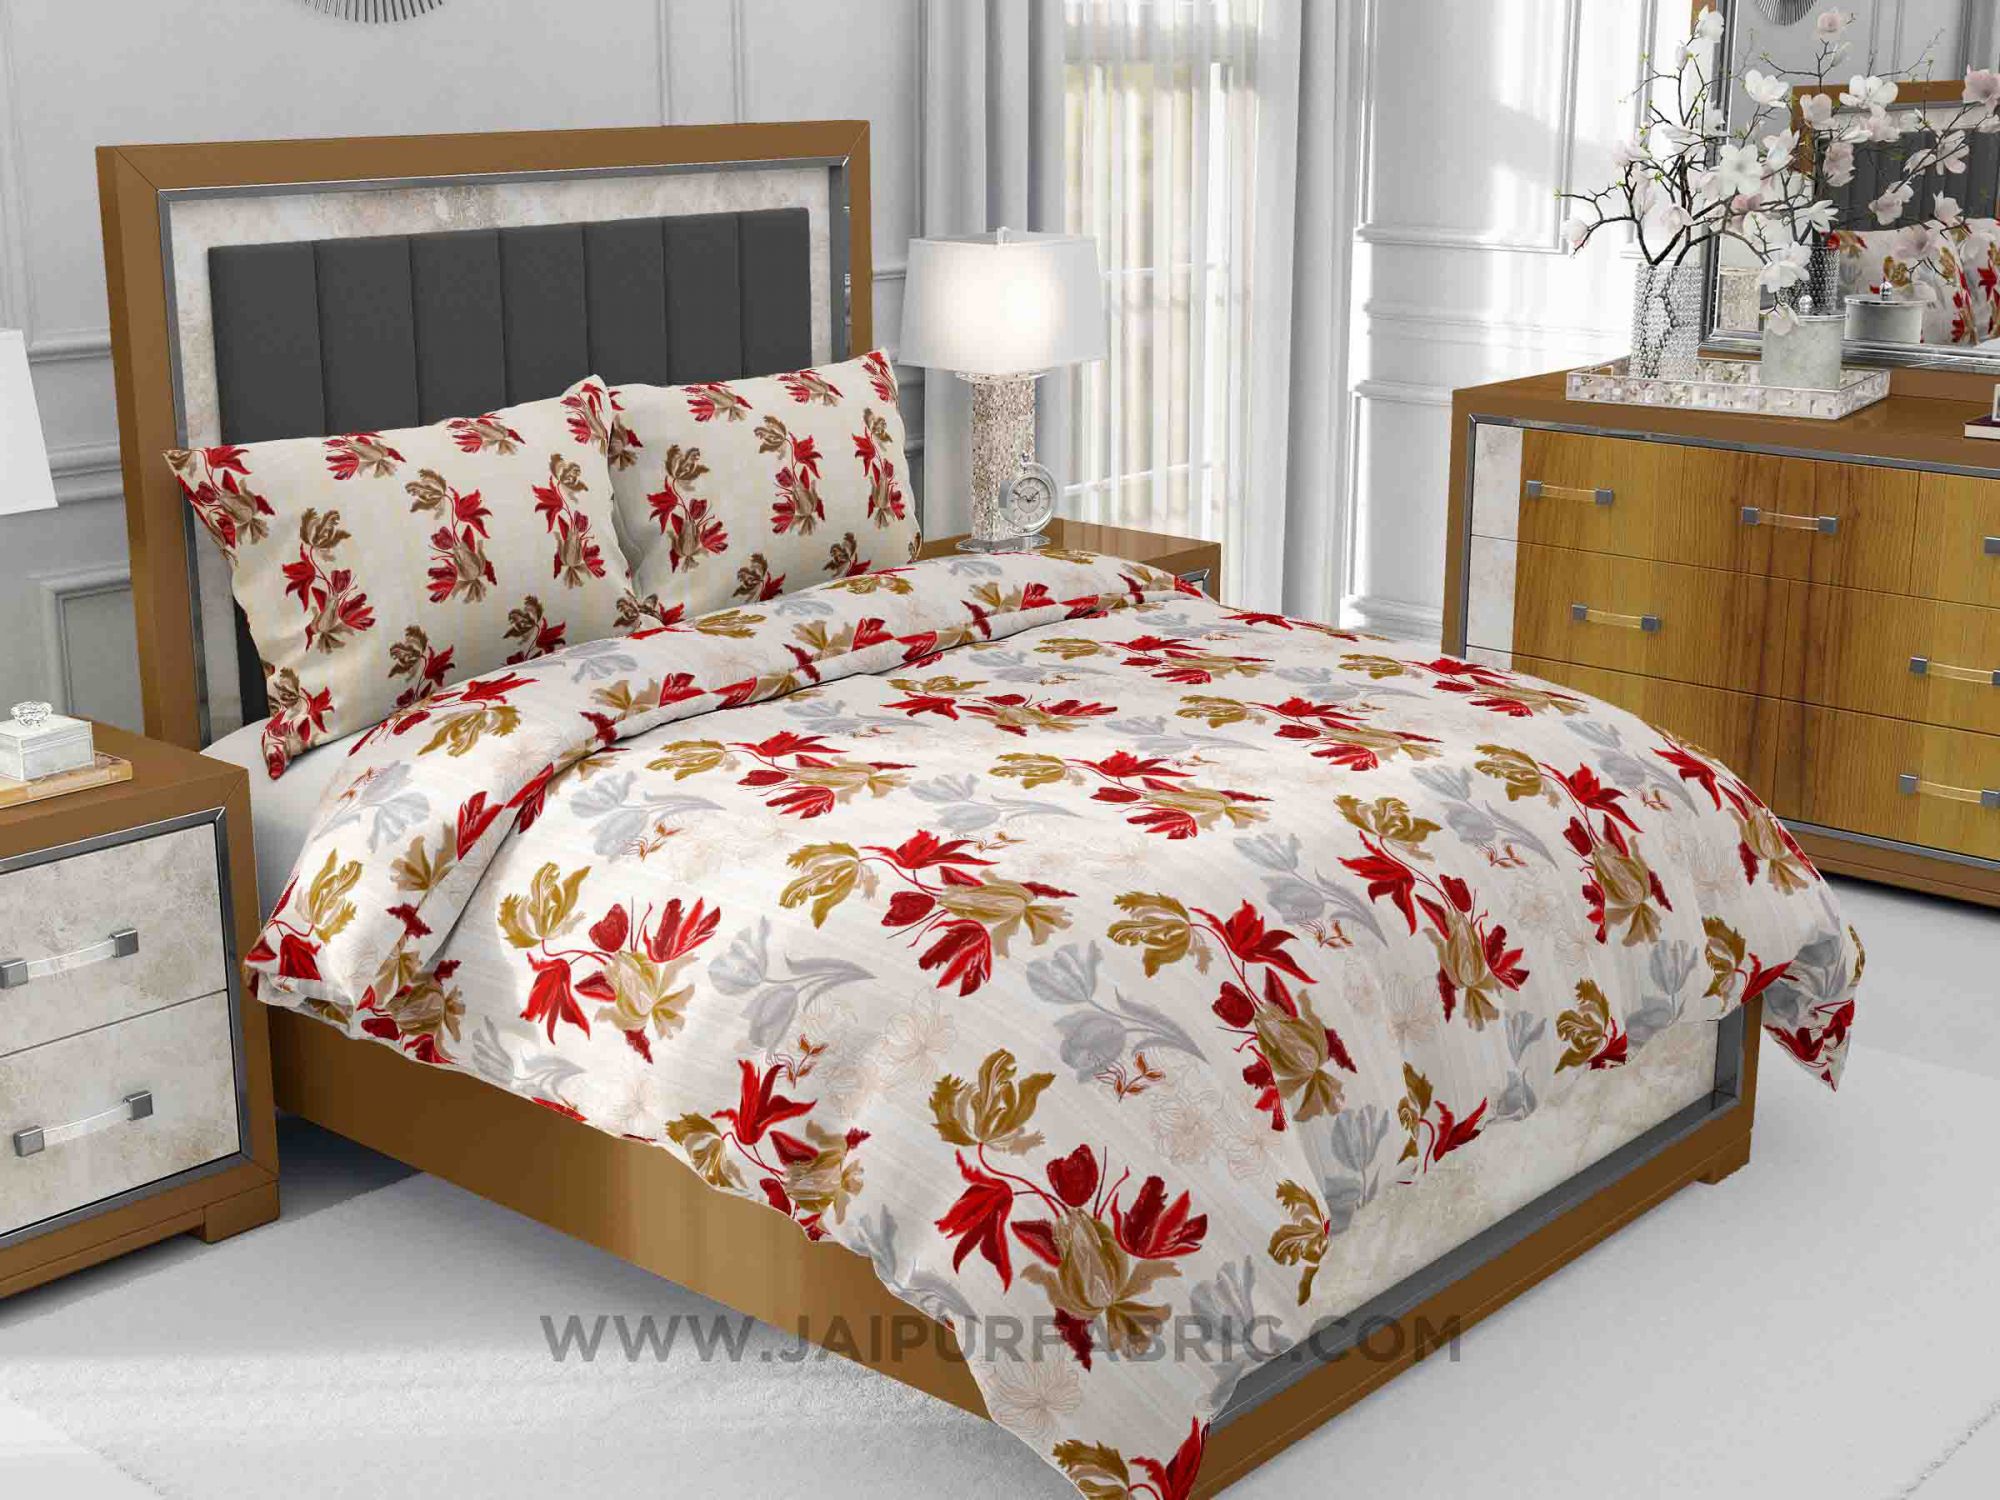 Red Floral Fete King Size Bedsheet